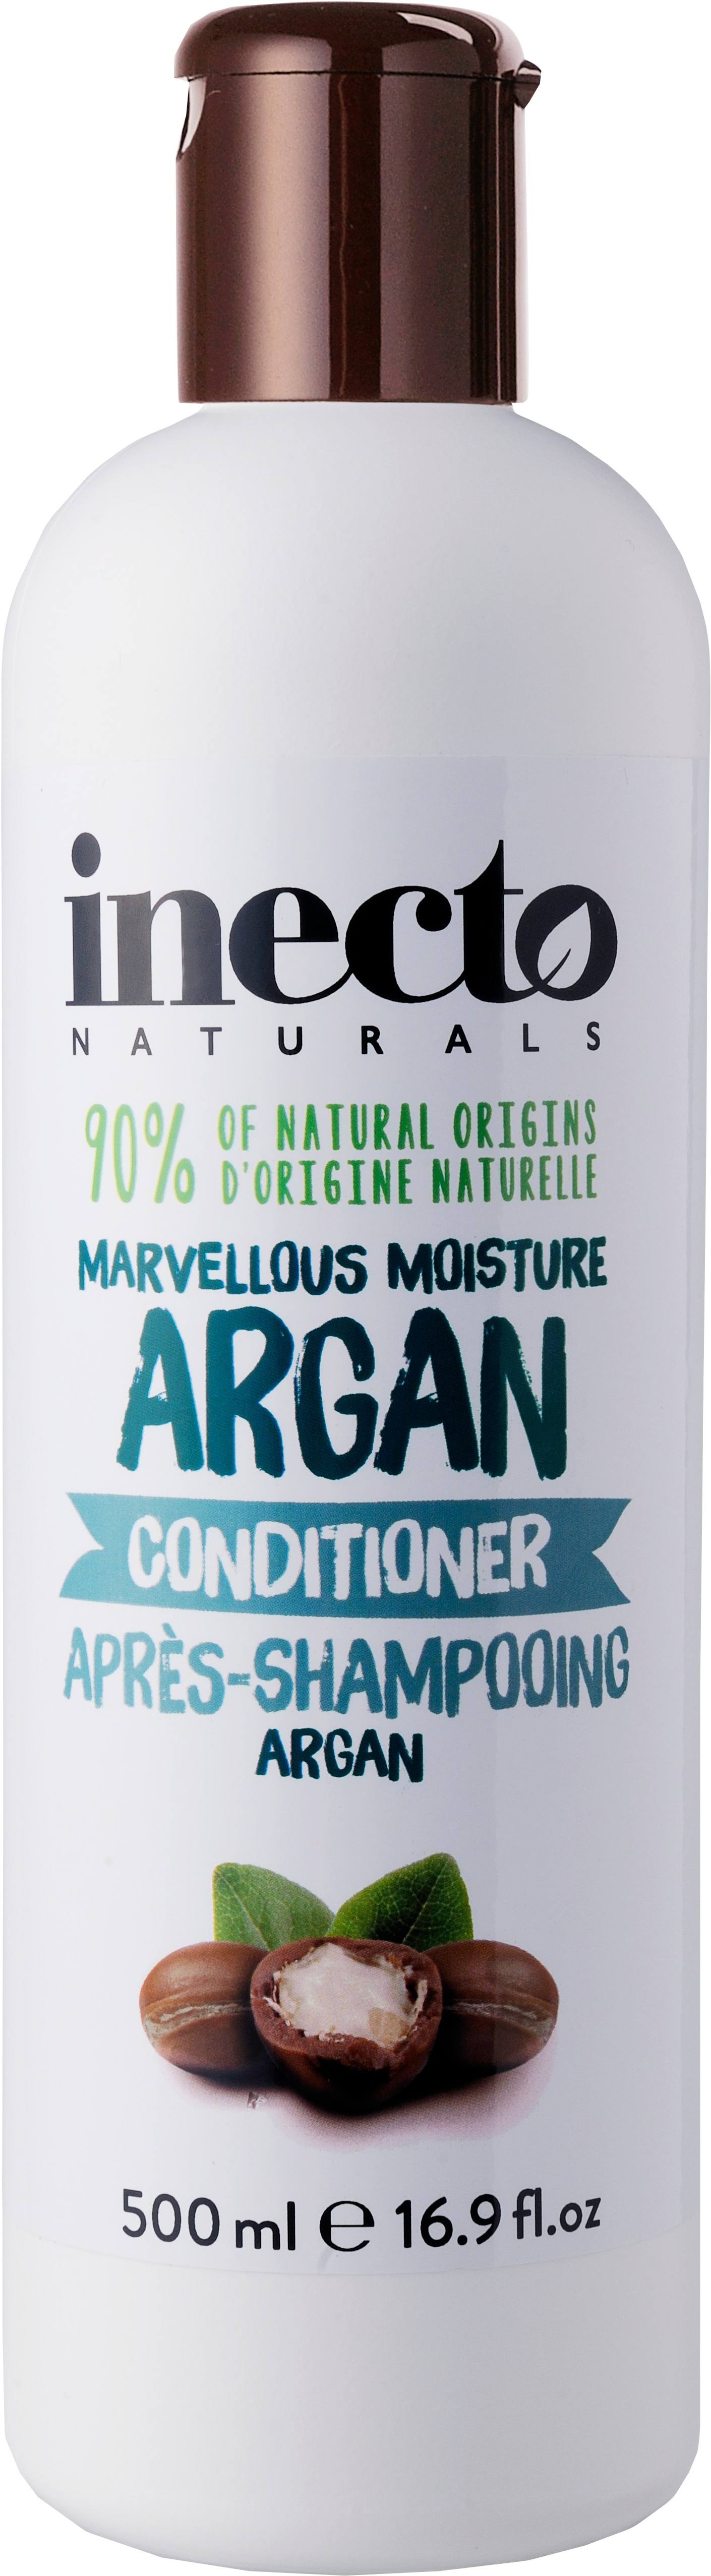 Inecto Naturals Argan Conditioner - 500ml